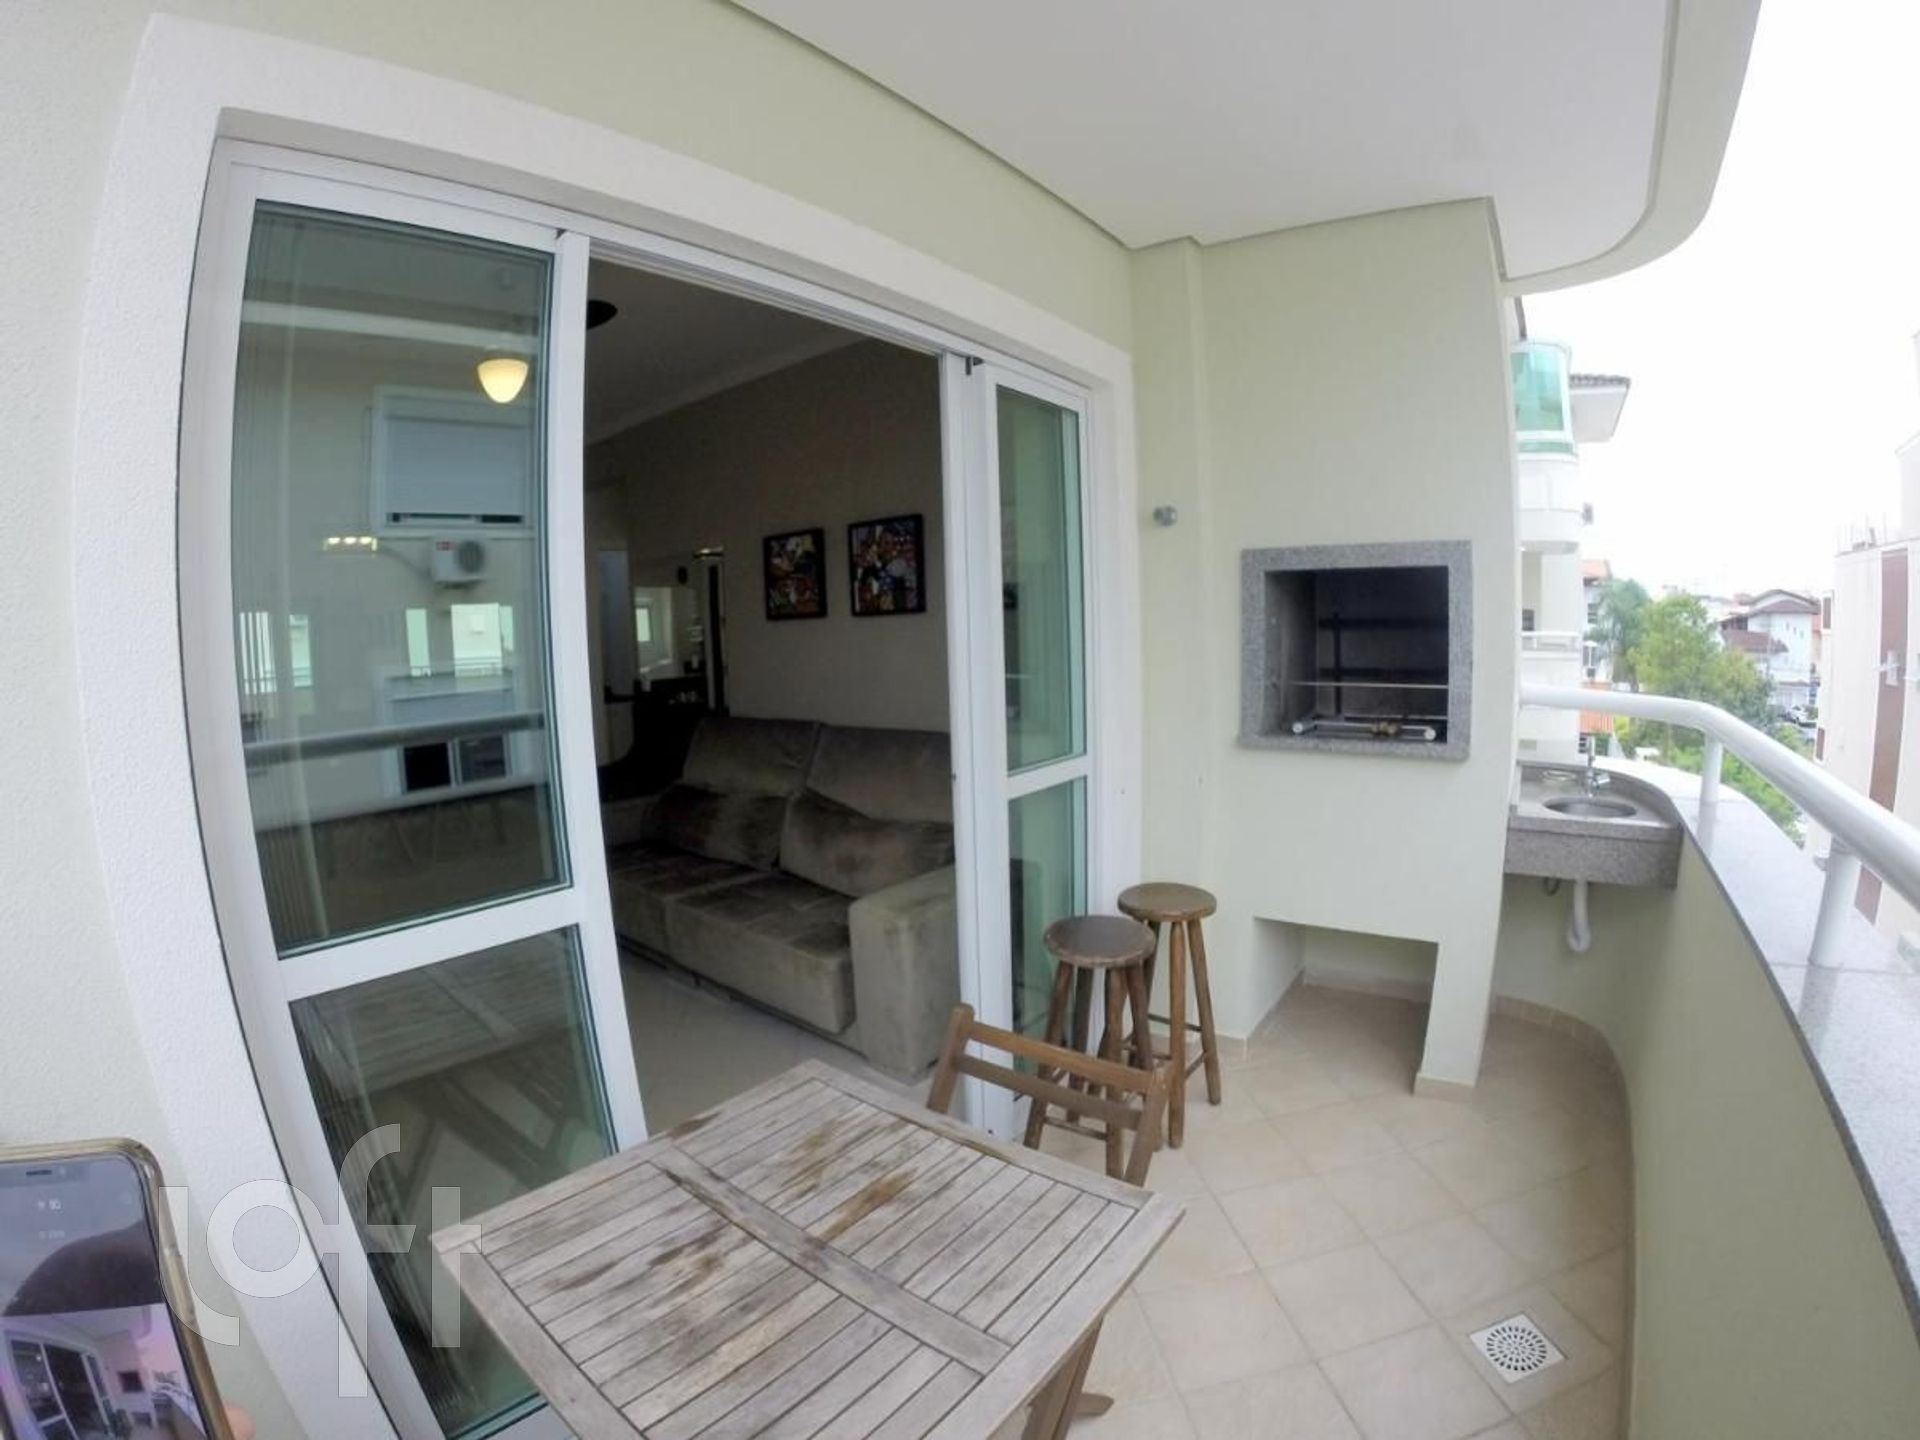 VENDA &#8211; Apartamento de 2 quartos no bairro Canasvieiras, Florianópolis &#8211; PU16ttg4h